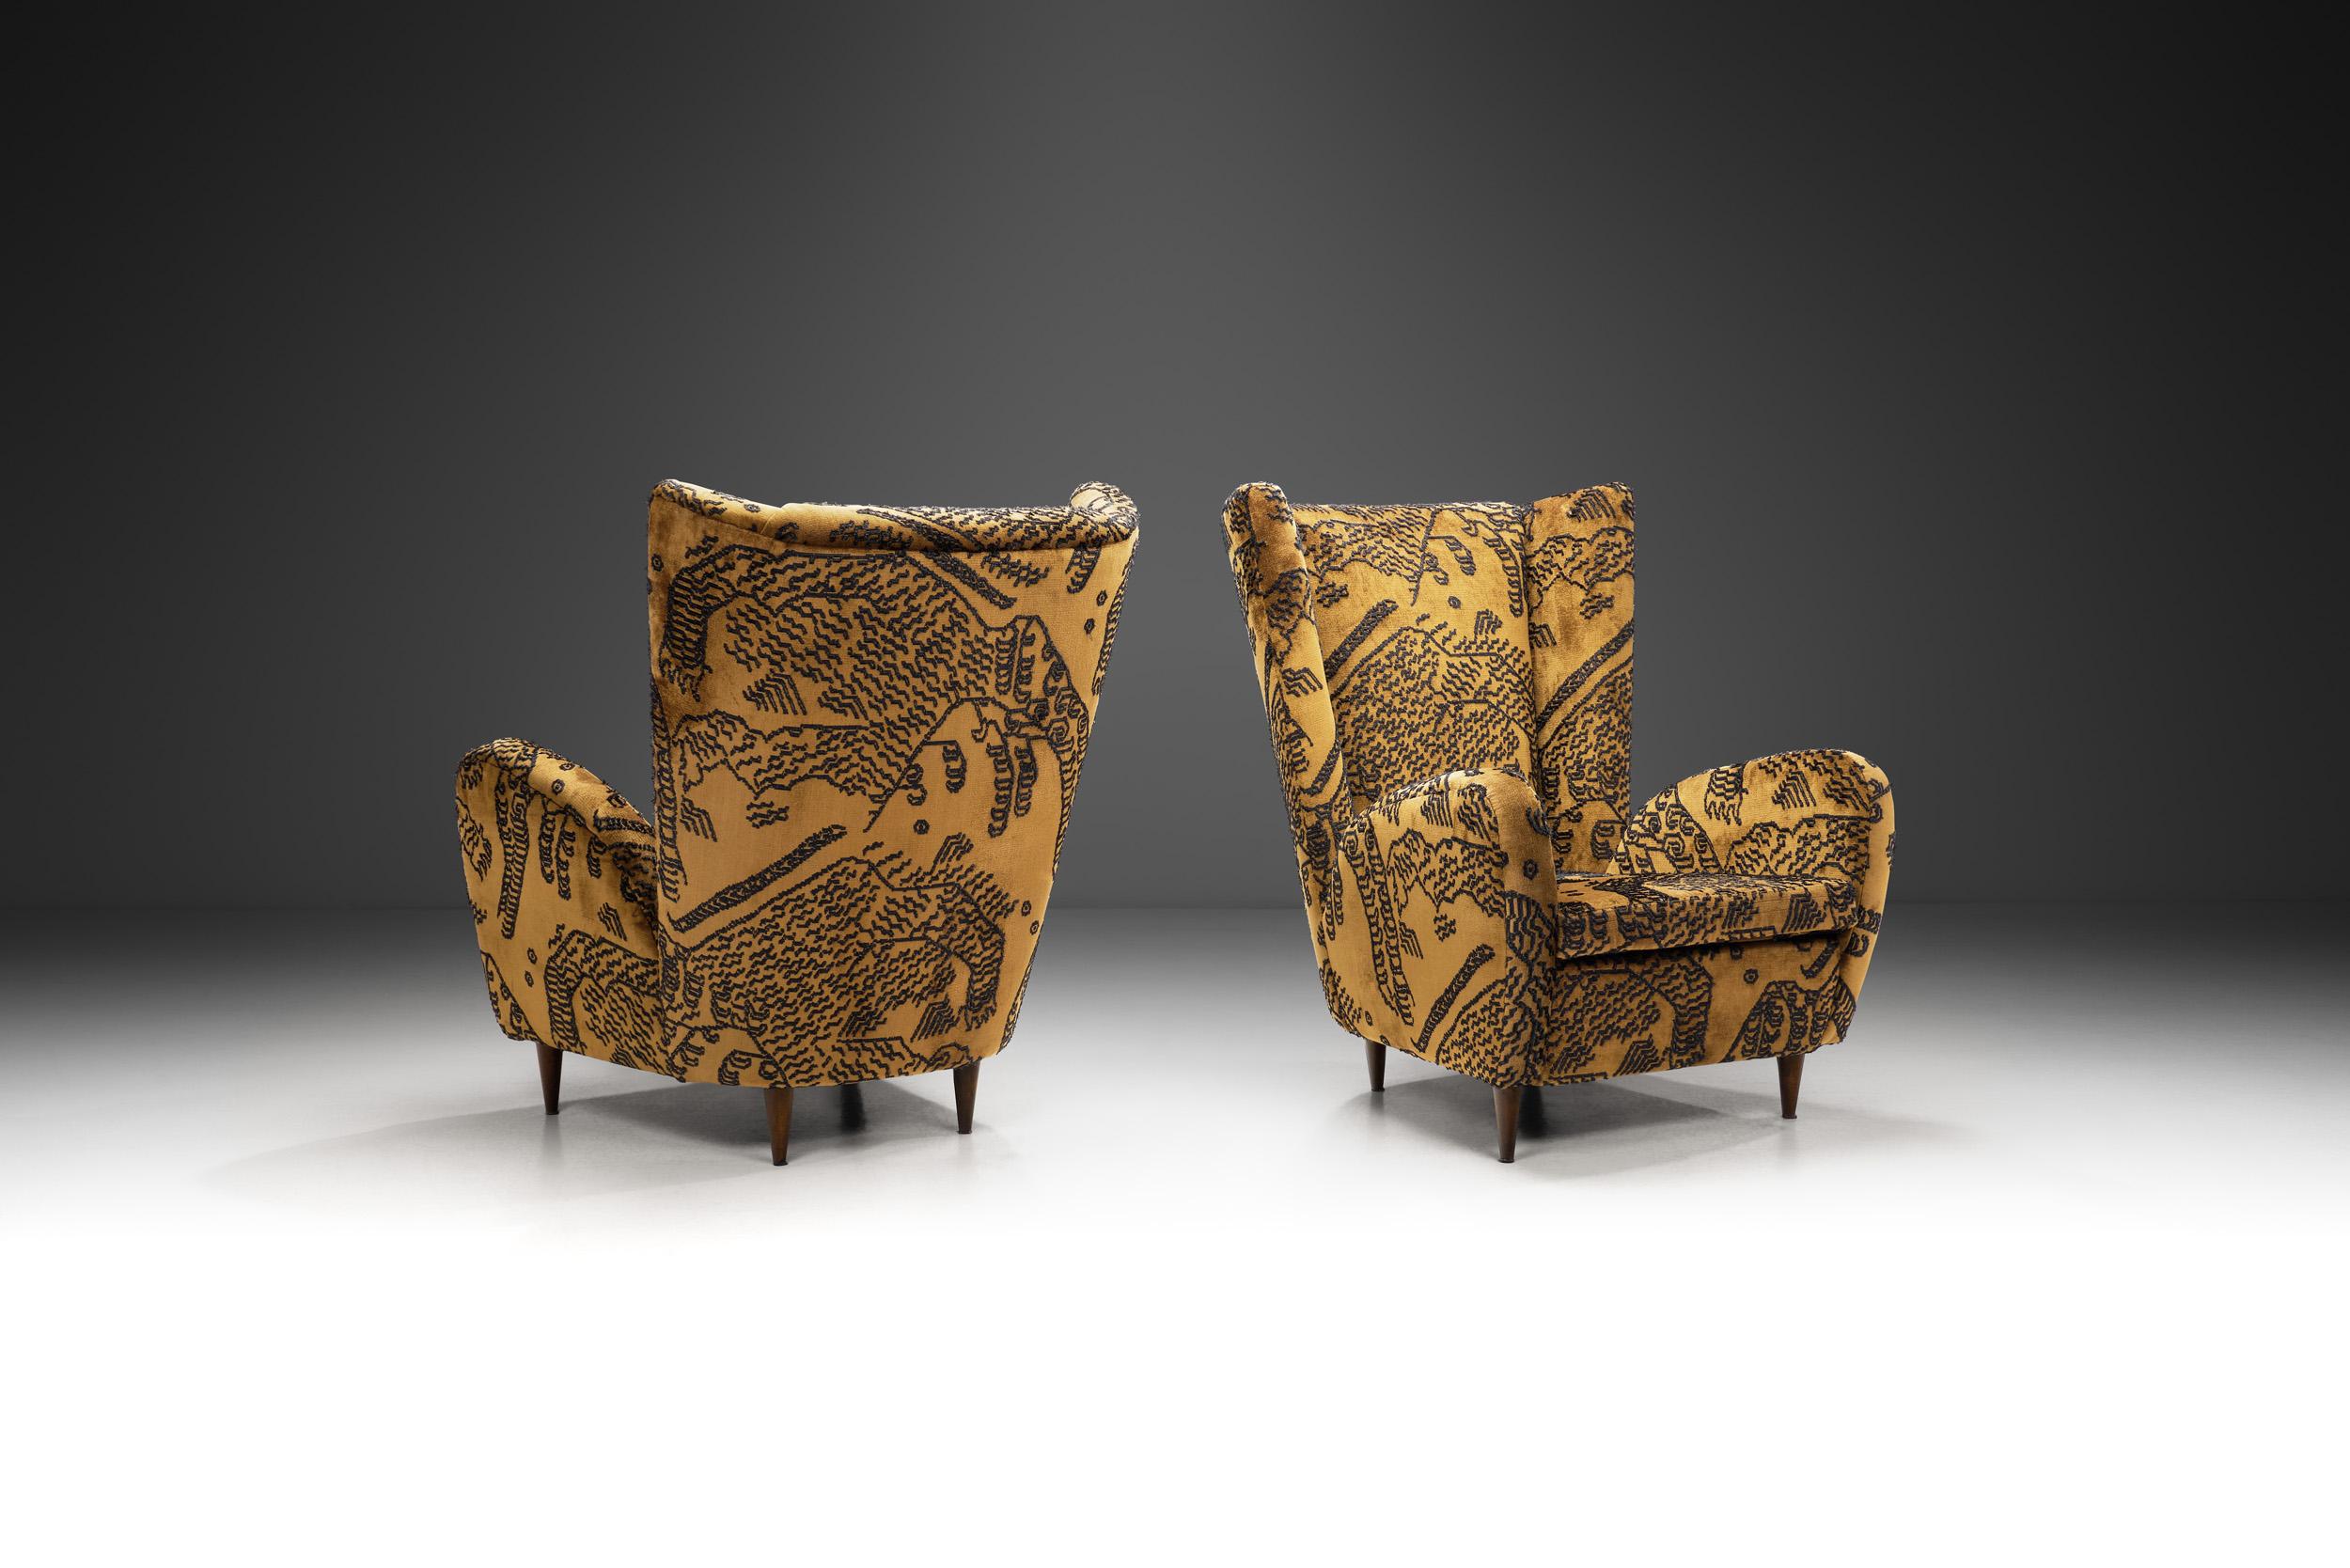 Die Möbel der italienischen Moderne zeichnen sich durch einzigartiges Design, perfekte Ausführung und Exklusivität aus. Dieses Sesselpaar wird der italienischen Designikone Paolo Buffa zugeschrieben. Zeitgleich mit den zeitgenössischen Debatten über